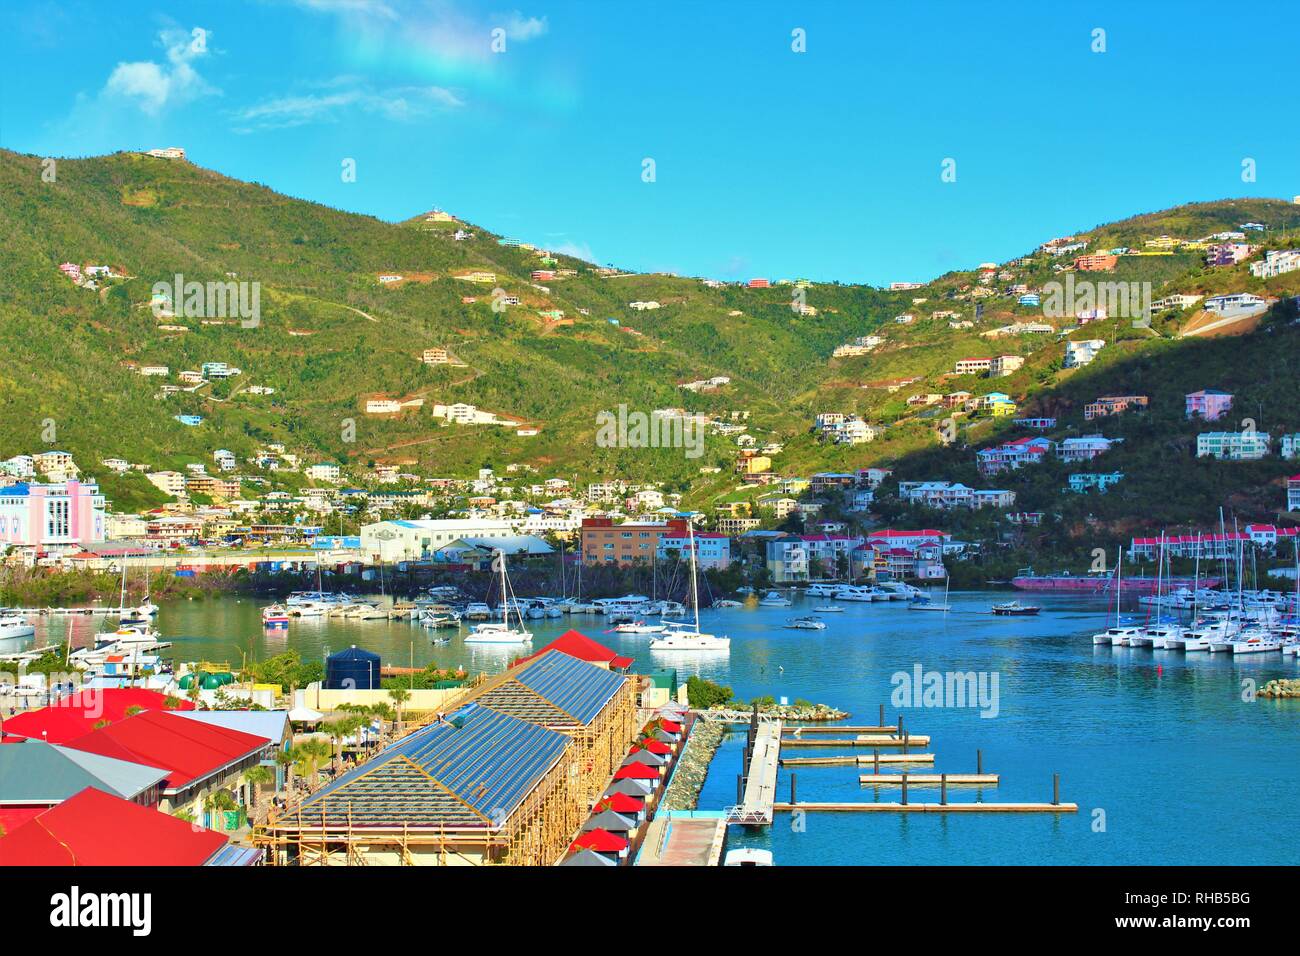 Una vista panoramica del porto e il paesaggio circostante di Road Town, Tortola, la più grande delle Isole Vergini Britanniche. Foto Stock